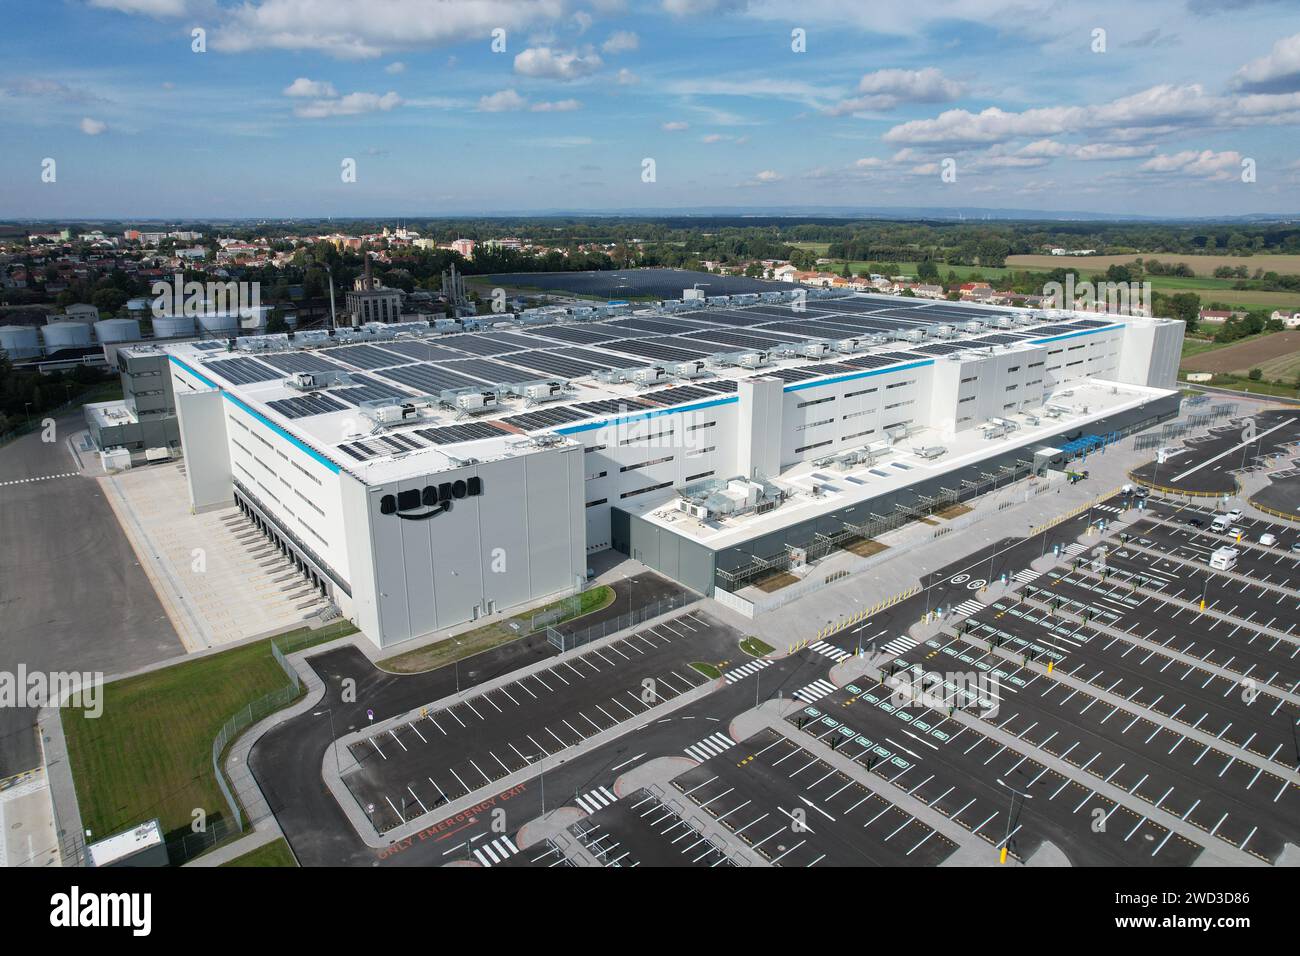 Vue aérienne du centre de distribution, photo drone de la zone logistique industrielle, nouveau centre logistique super moderne plein de technologie moderne et robotique Banque D'Images